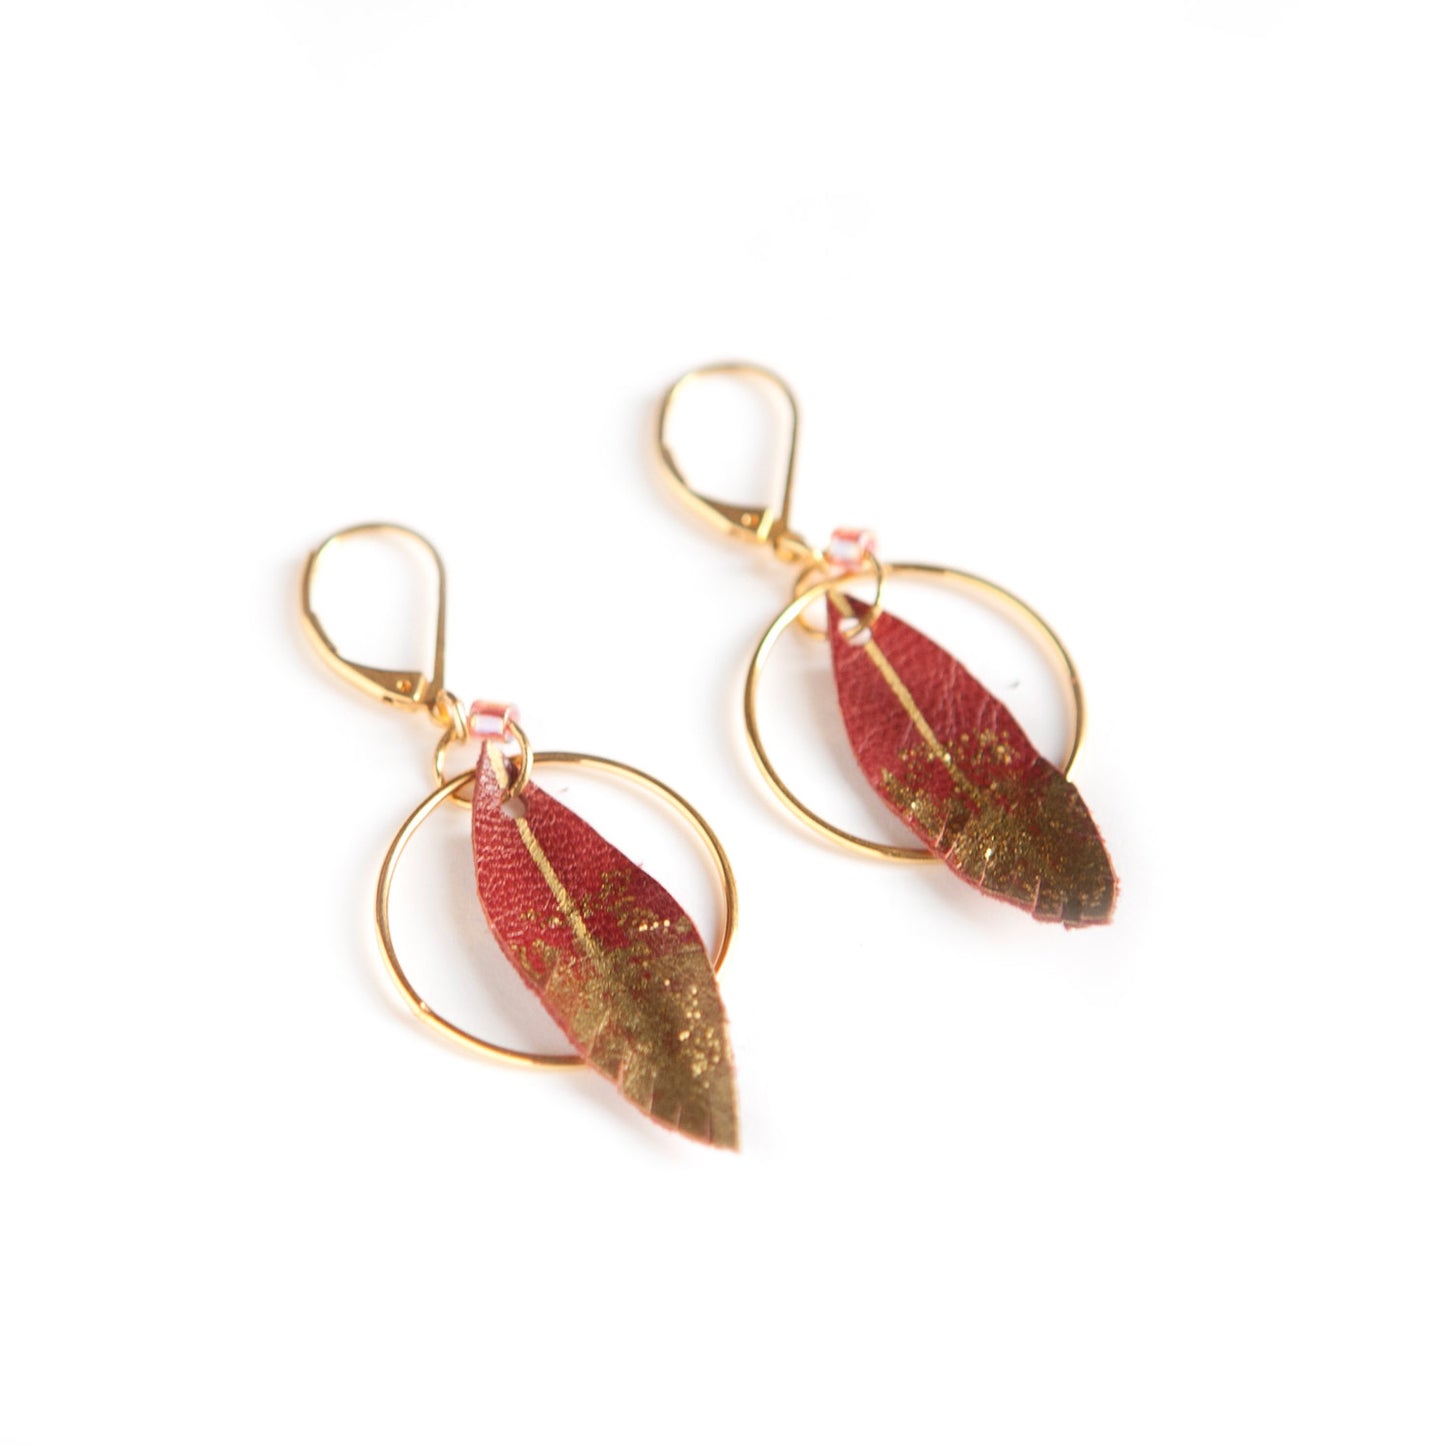 Feather hoop earrings in dark red leather